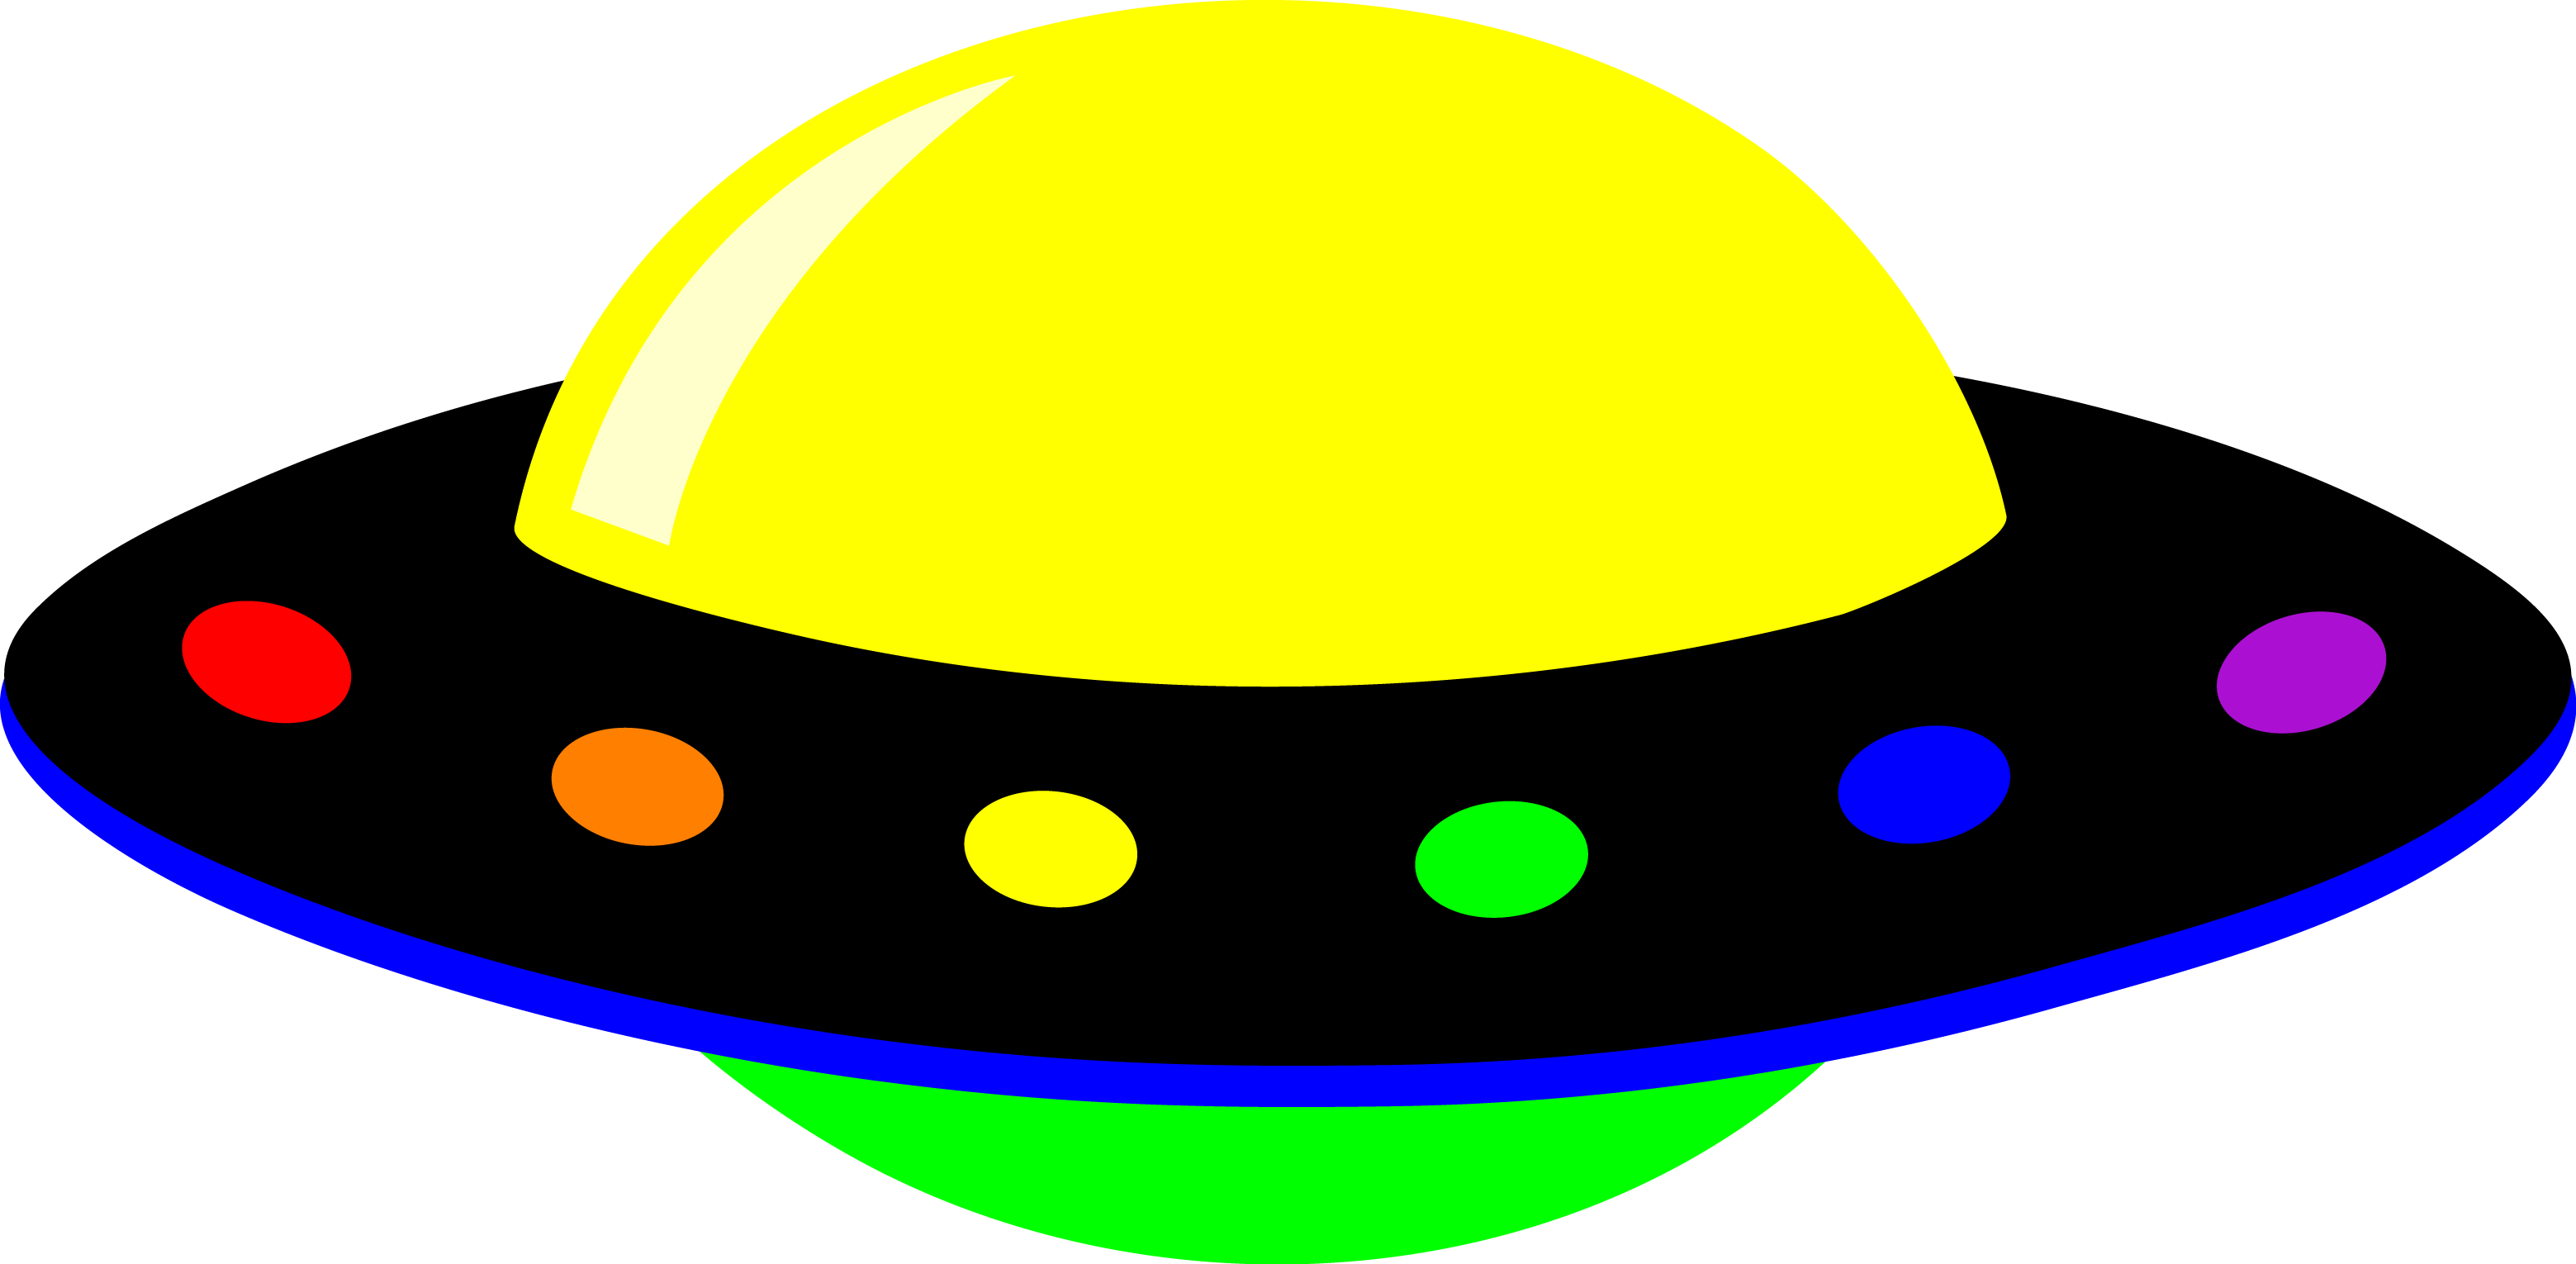 Neon Colorful Alien UFO - Free Clip Art